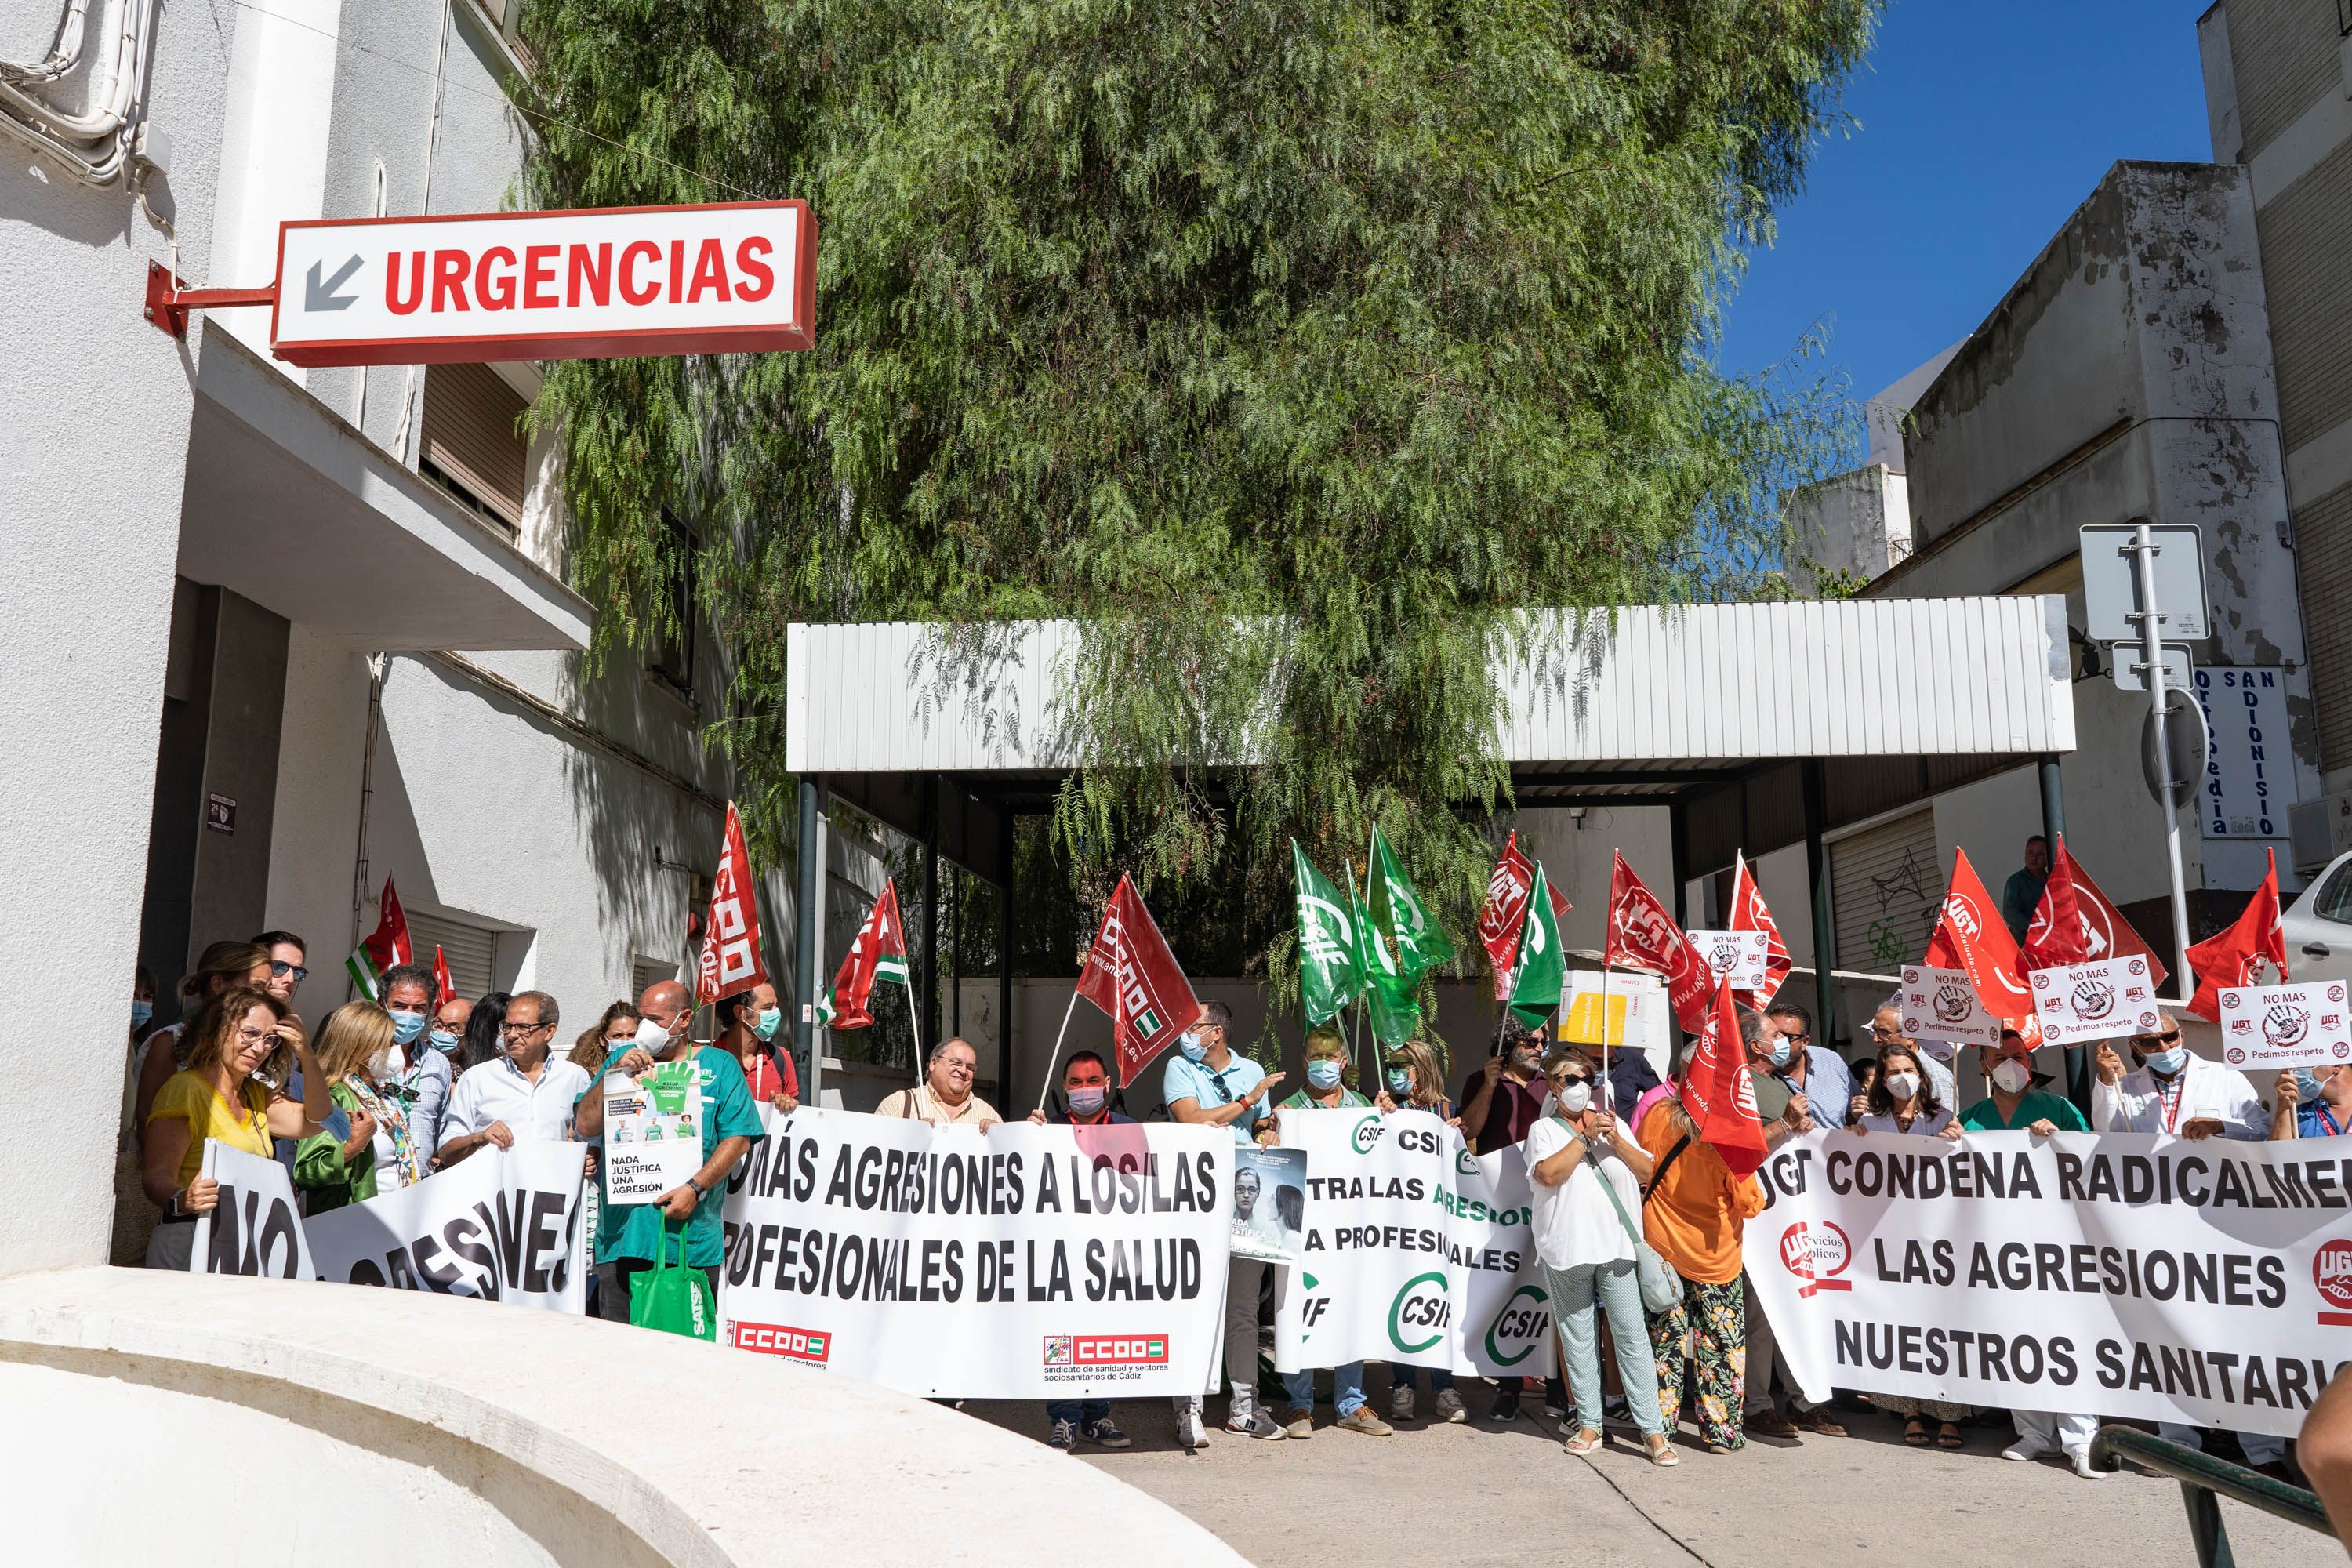 Un momento de una concentración contra agresiones en el centro de salud Jerez centro.